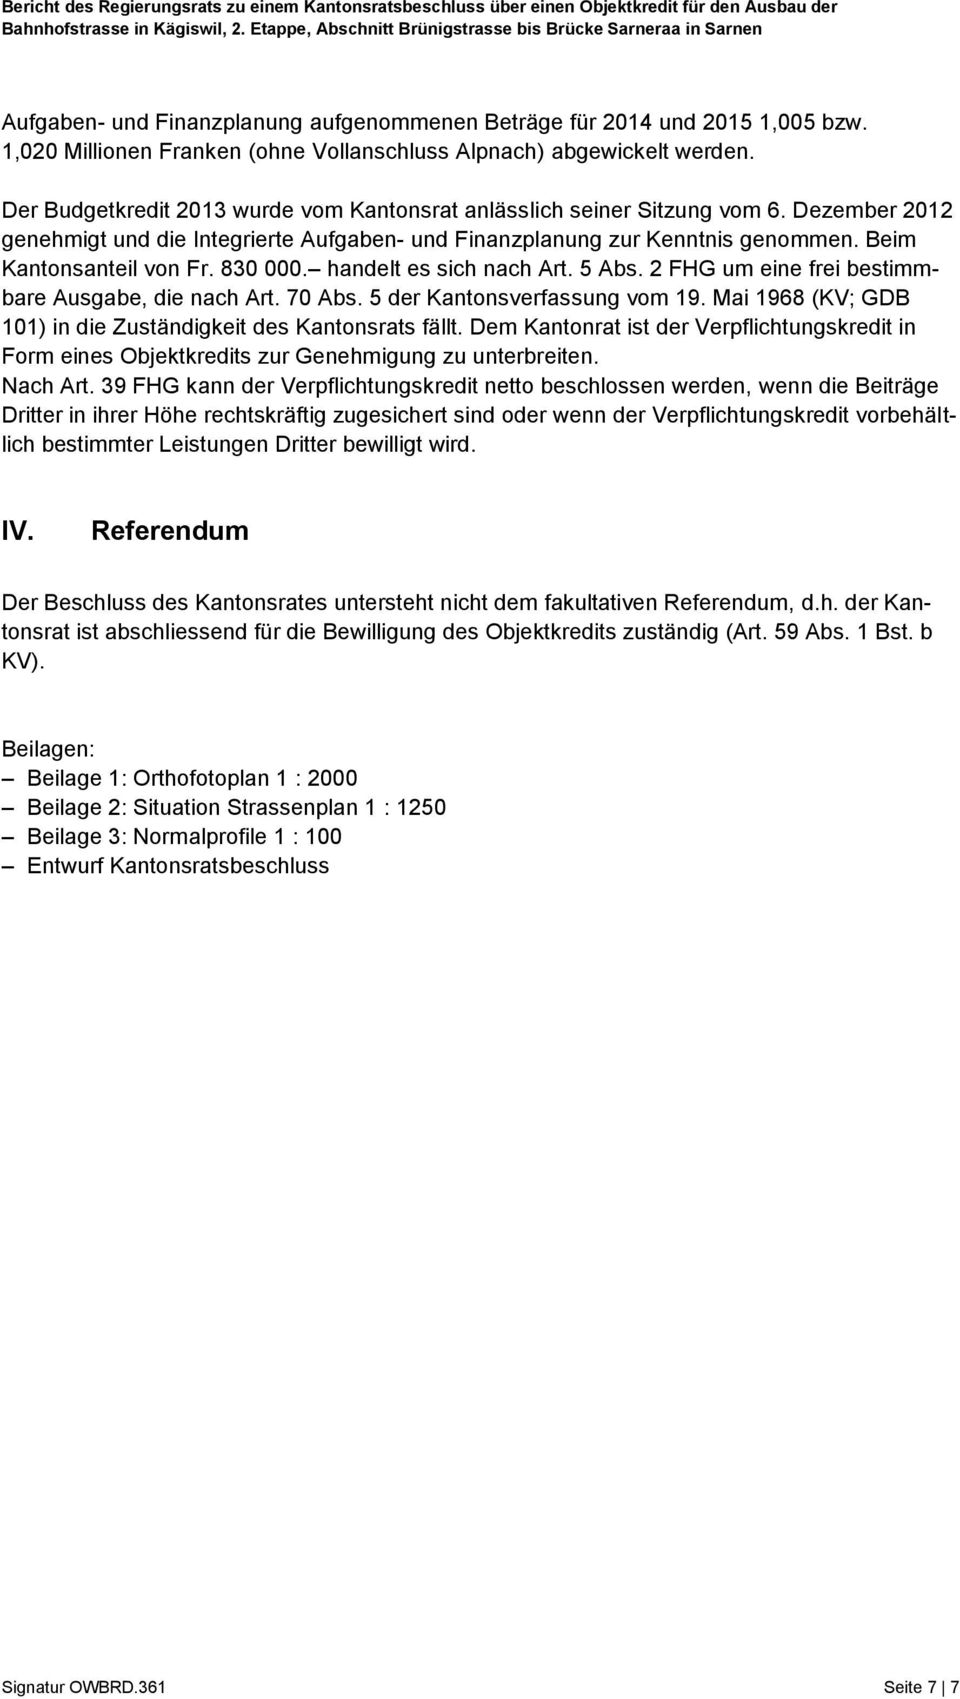 830 000. handelt es sich nach Art. 5 Abs. 2 FHG um eine frei bestimmbare Ausgabe, die nach Art. 70 Abs. 5 der Kantonsverfassung vom 19.